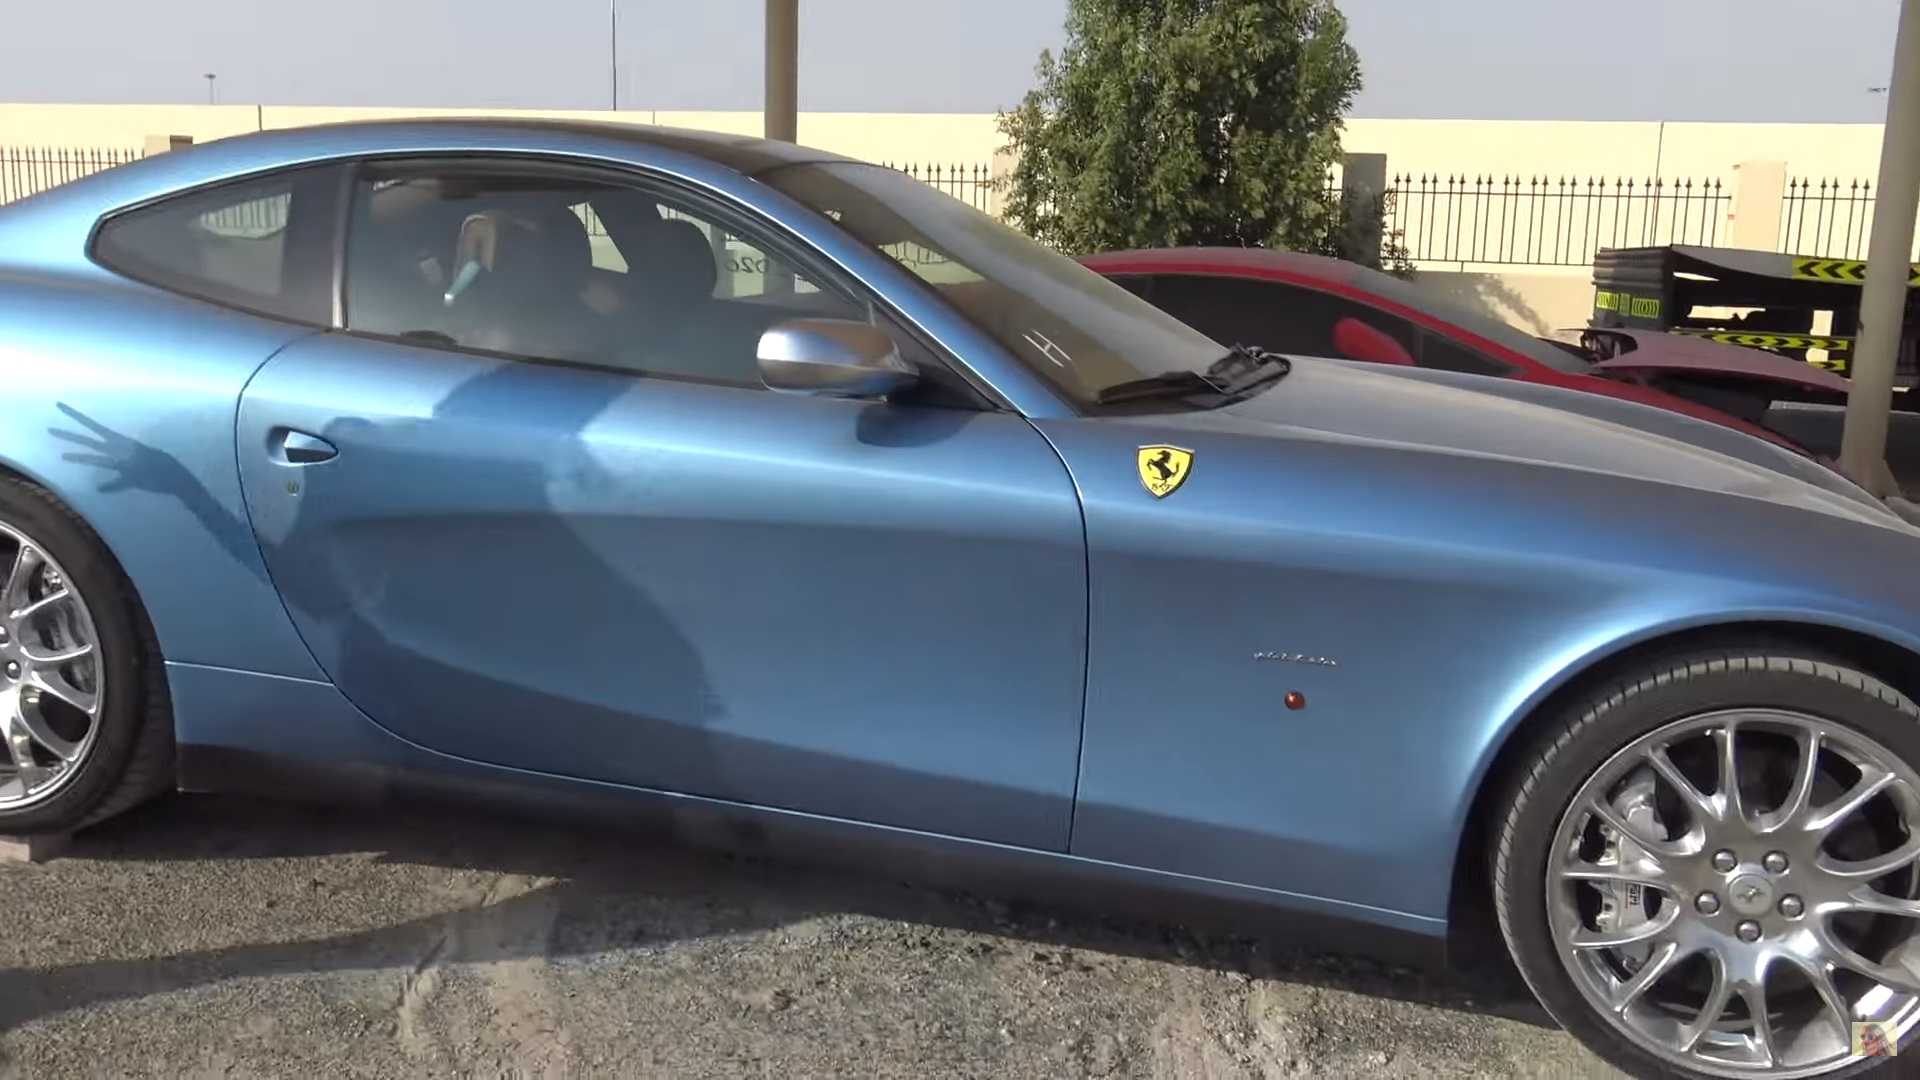 ساحة خردة في دبي تستضيف سيارات فاخرة ورياضية من كل نوع "فيديو" 7